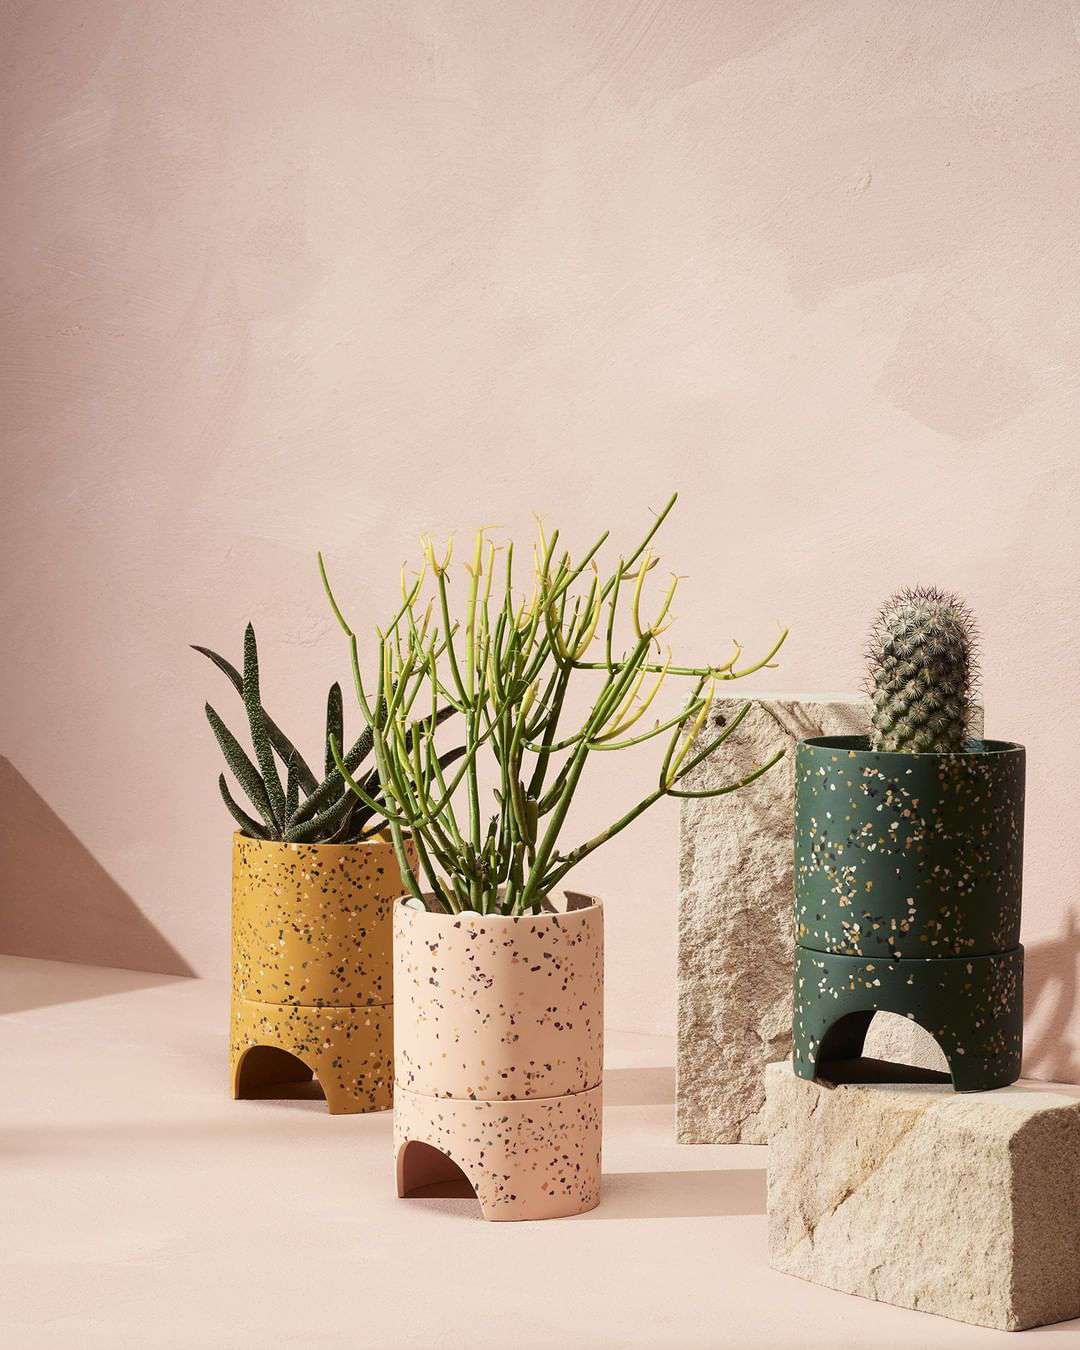 Terrazzo planters with cactus